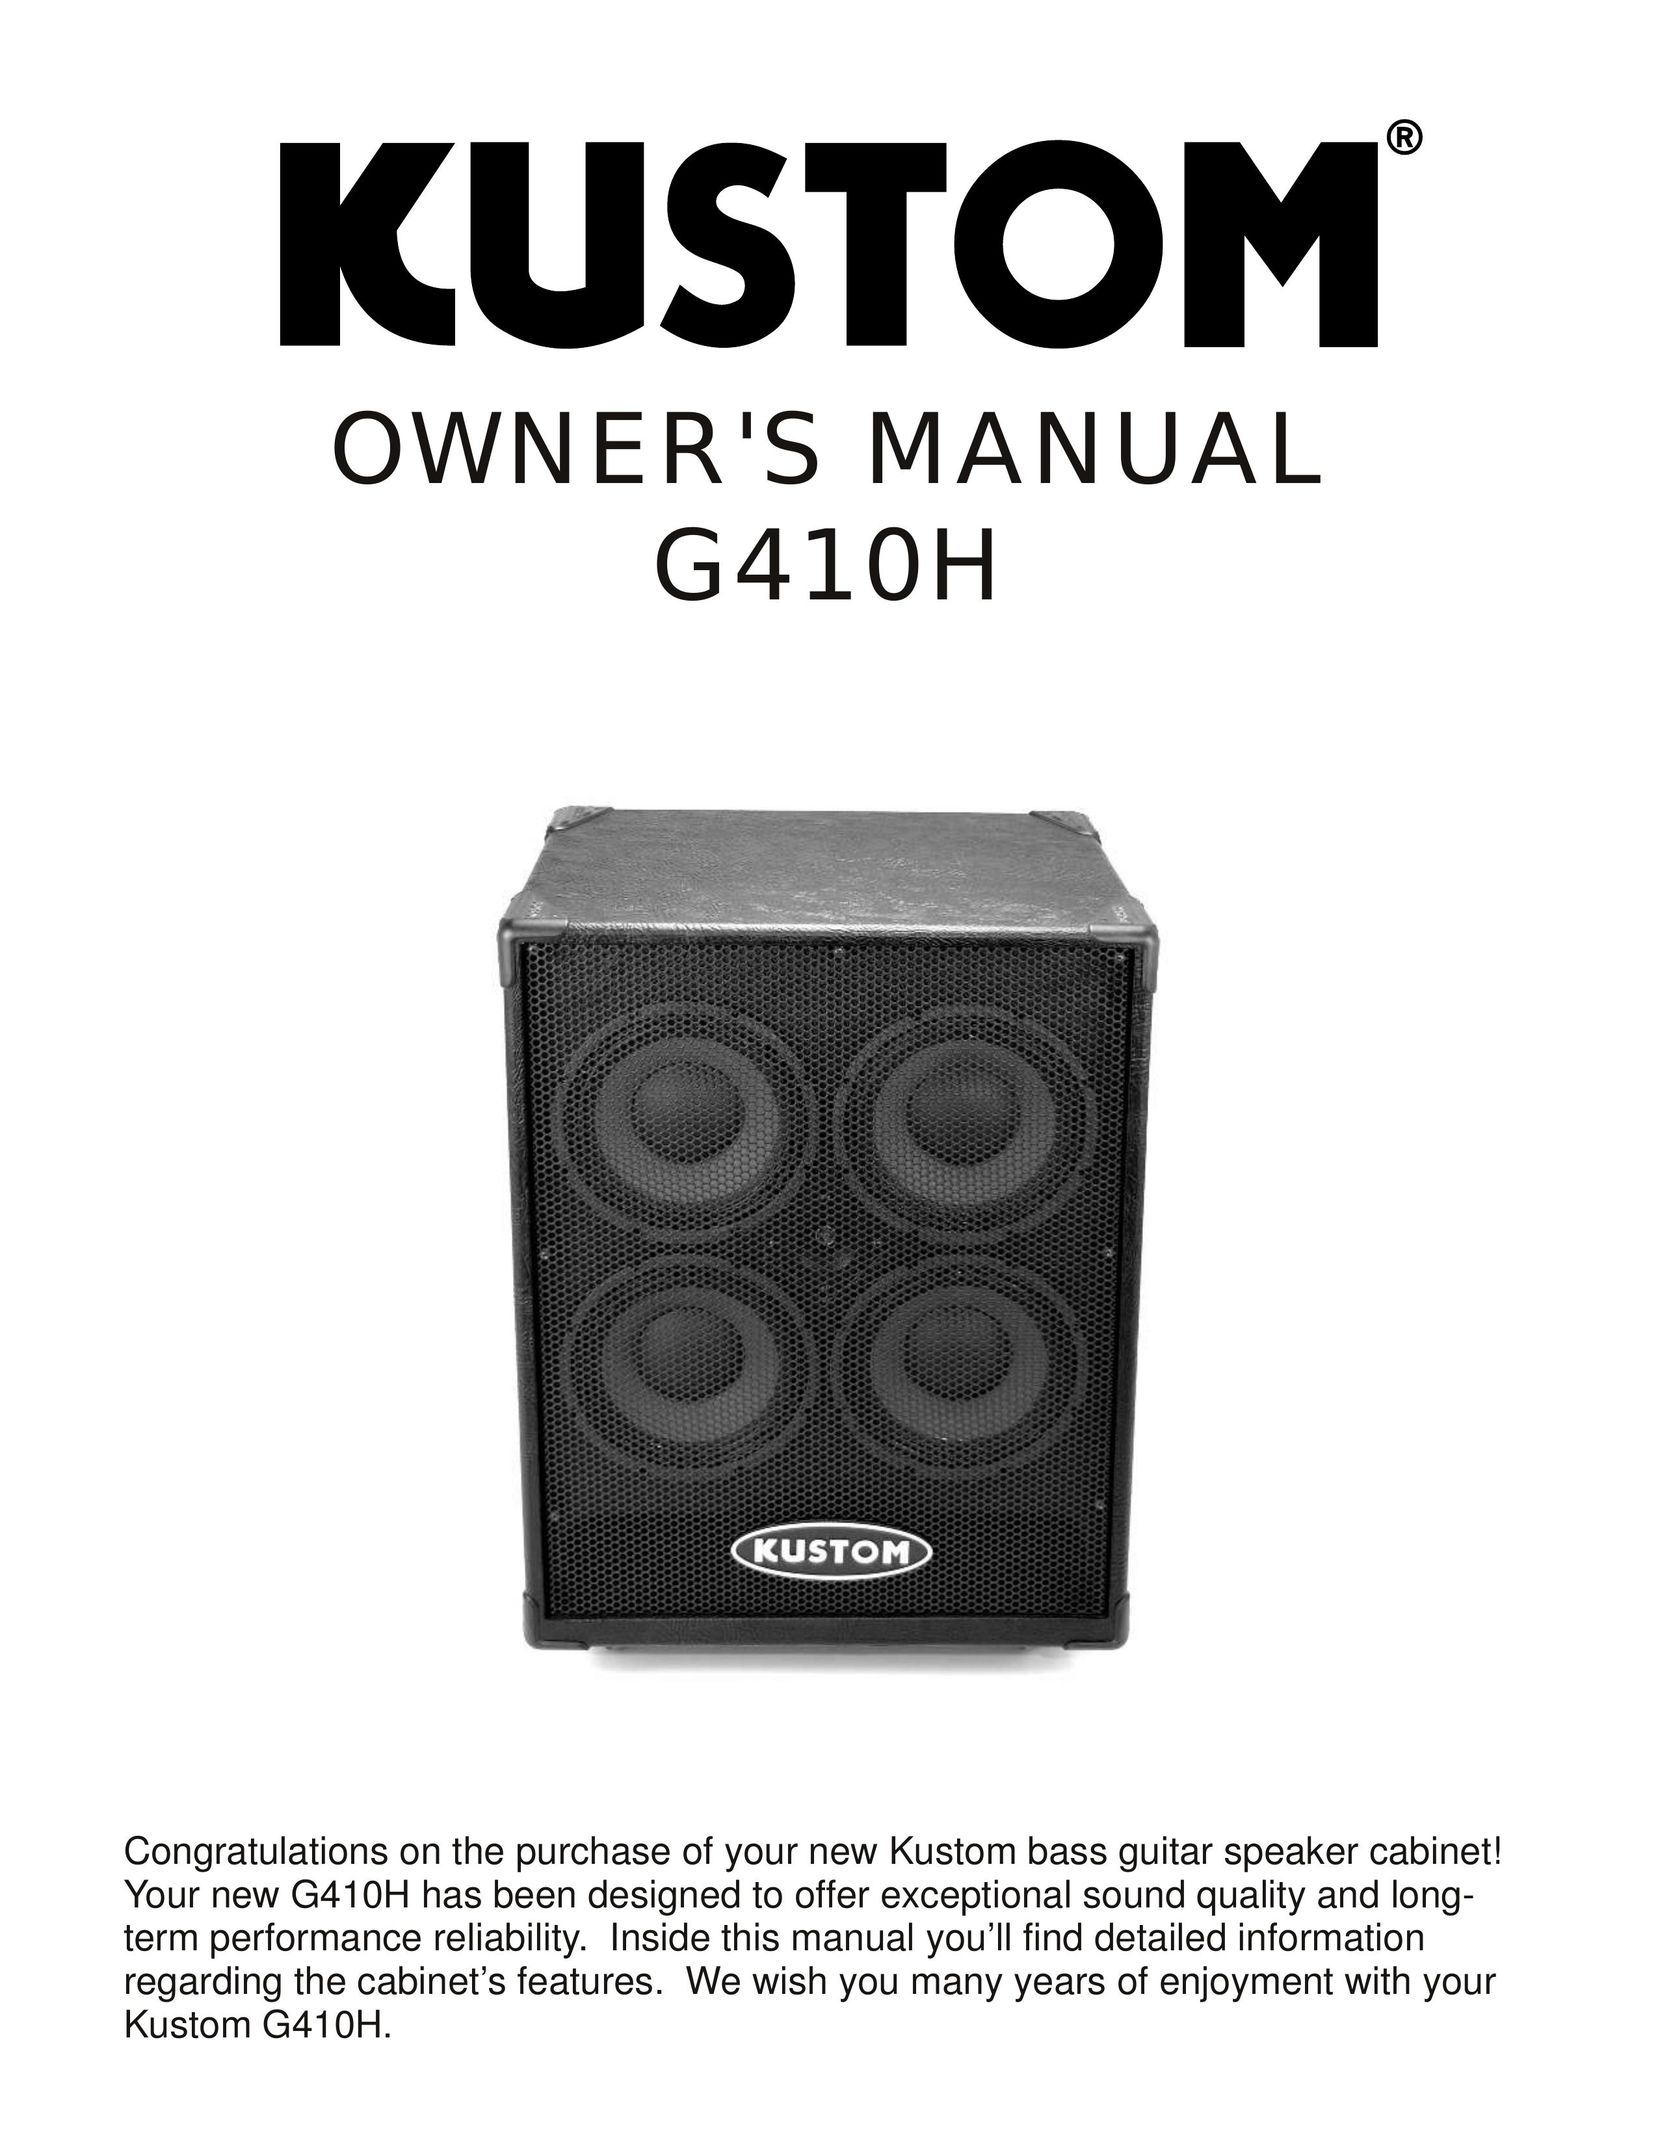 Kustom G410H Stereo Amplifier User Manual